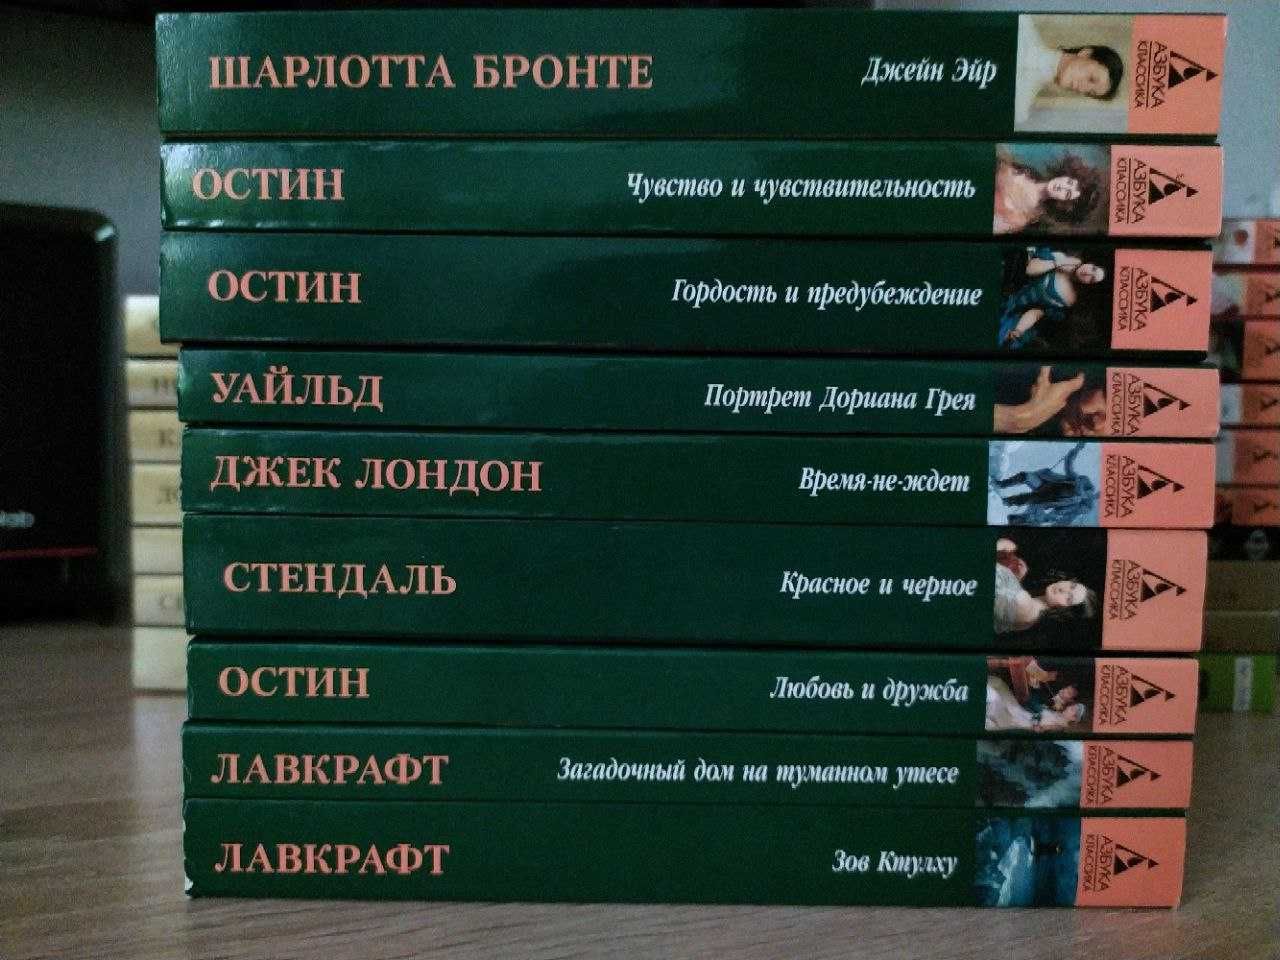 Азбука-классика. Non-fiction/ 100 главных книг. Замовляти від 150 грн